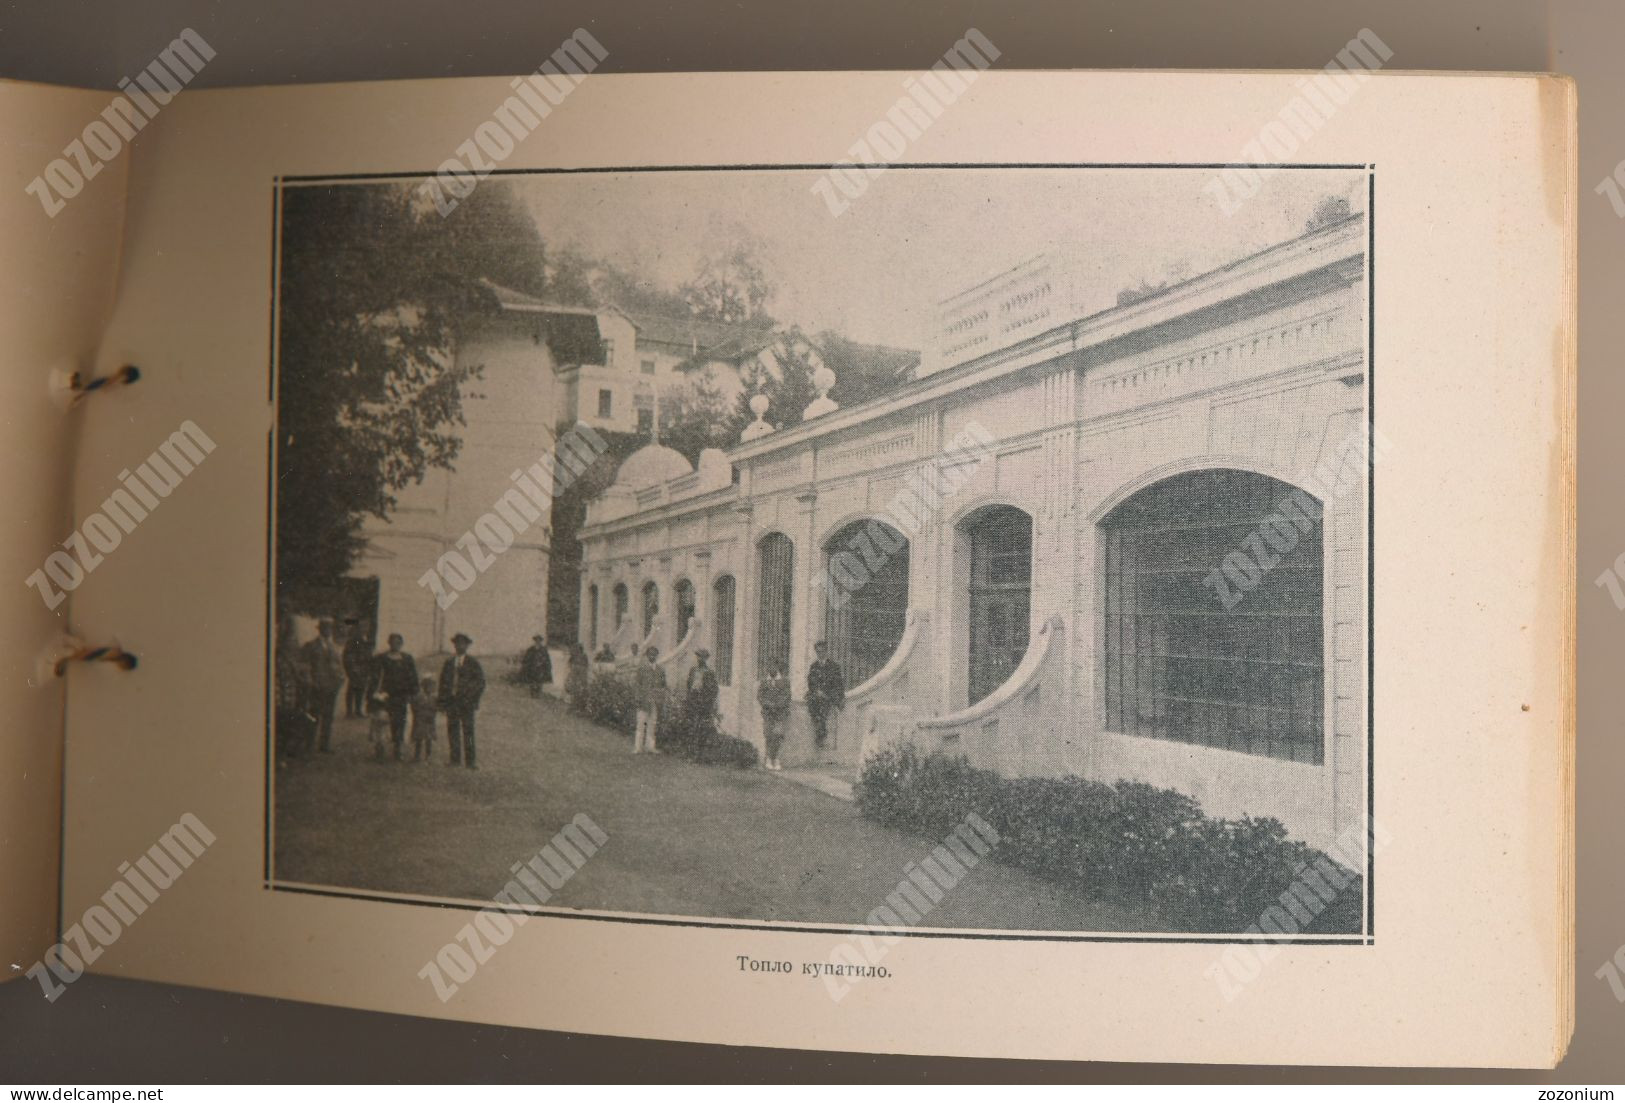 1926 RIBARSKA BANJA karnet, booklet with 15 images 15 Fotografija SRBIJA old book